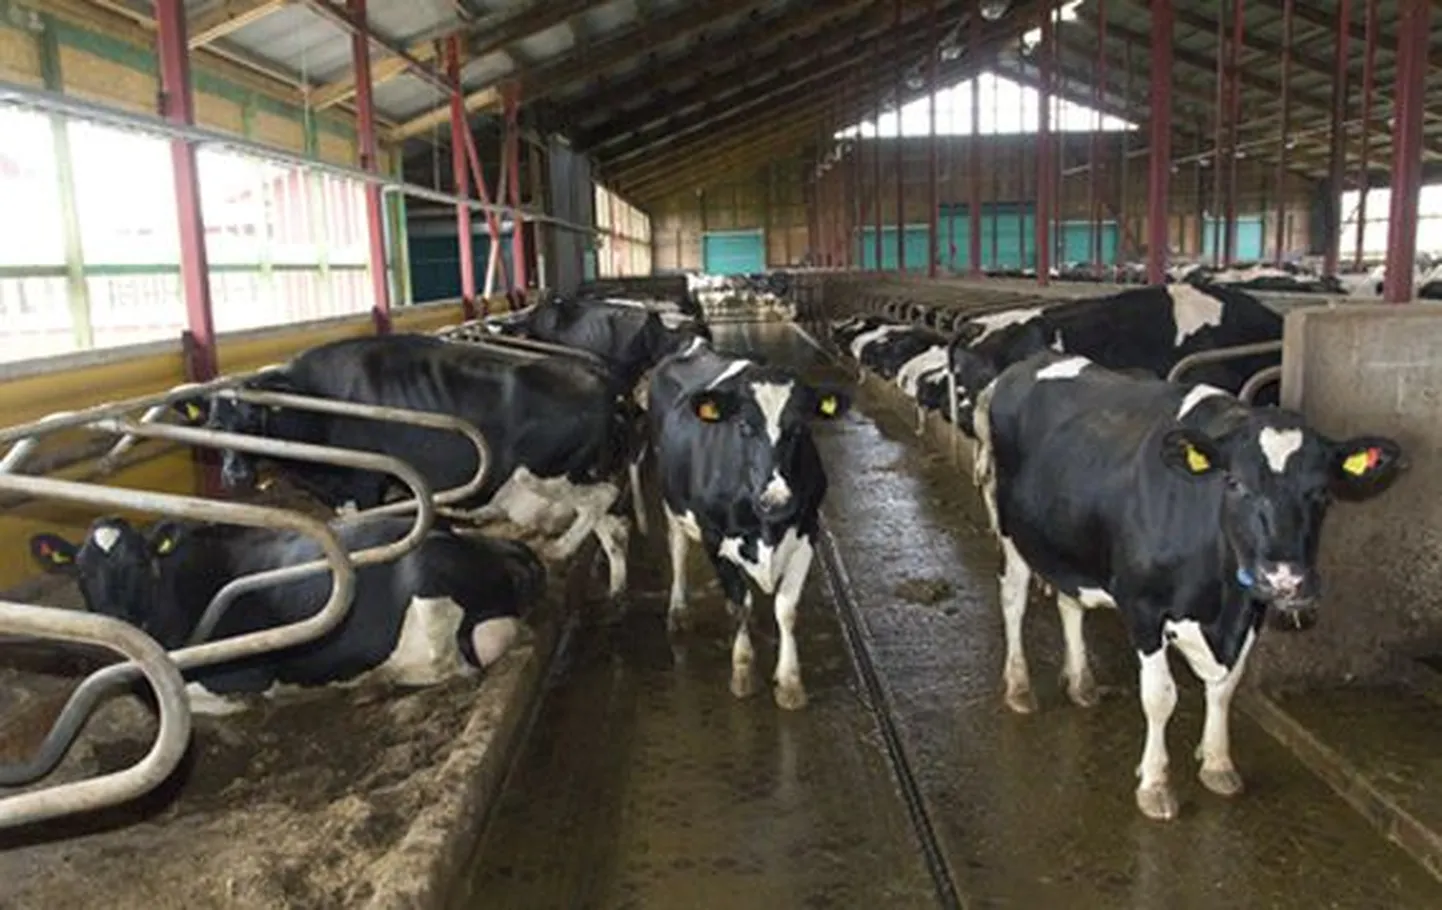 Vao Agro laiendatud Veski veisefarmis suurendatakse peagi lüpsilehmade arvu rohkem kui kahesaja looma võrra, mis muudab piimatootmise efektiivsemaks.